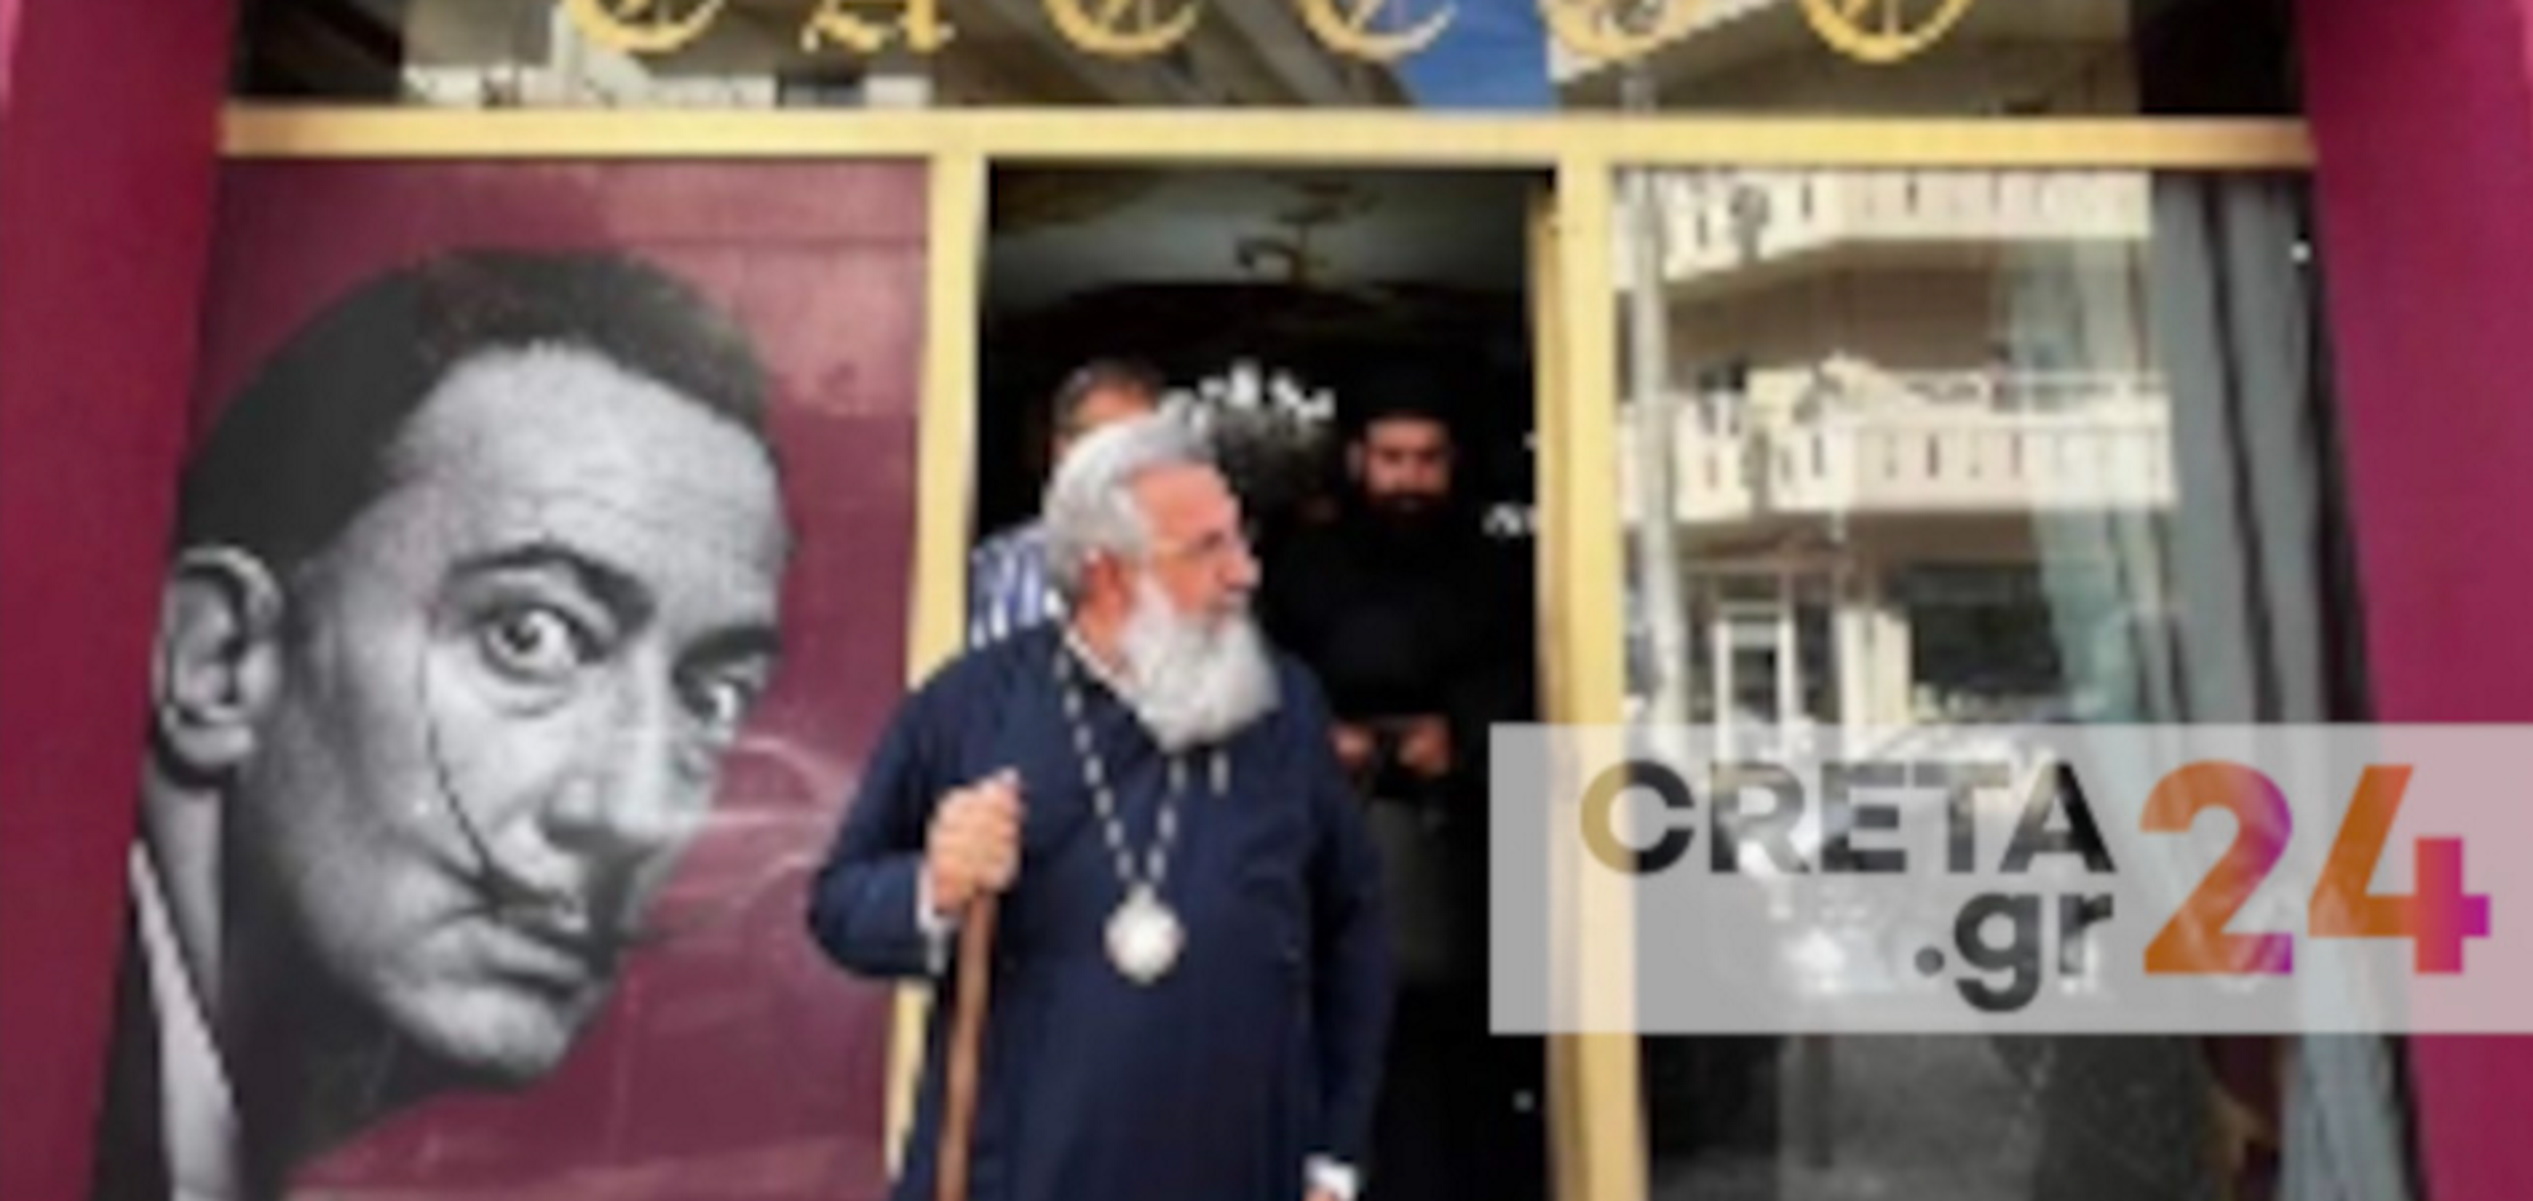 Αρχιεπίσκοπος Κρήτης: Η απρόσμενη επίσκεψη σε tattoo studio και η αντίδραση  των υπαλλήλων